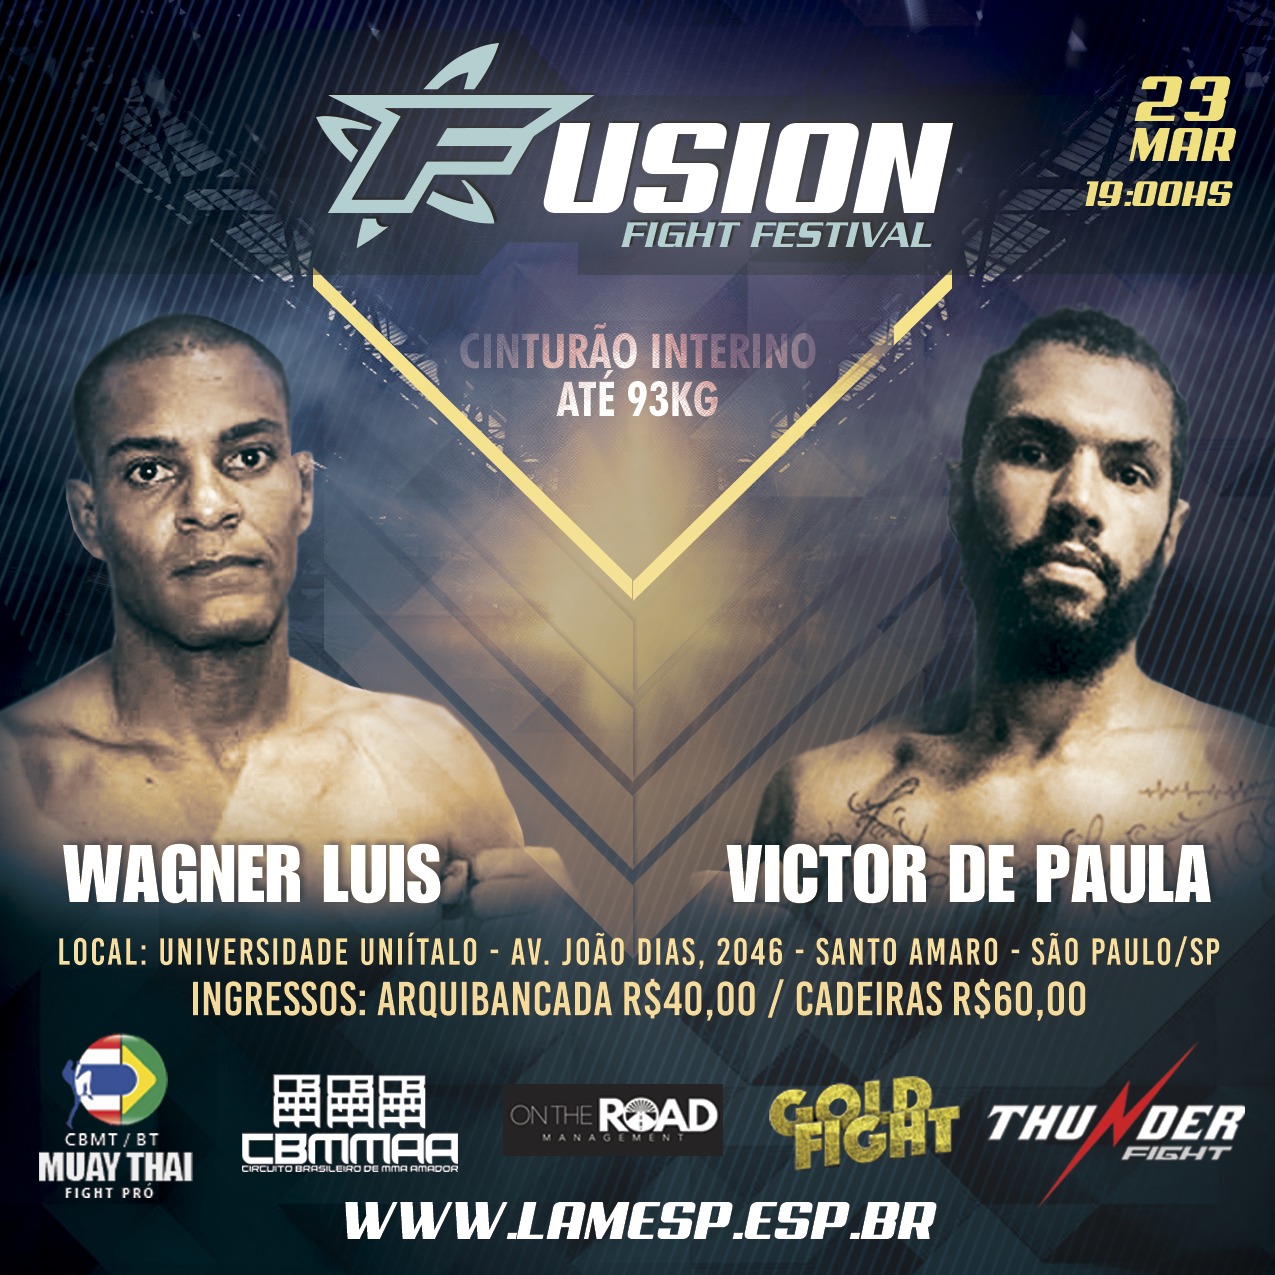 Fusion Fight Festival promete agitar São Paulo com dois cinturões em jogo neste mês de março; veja o card